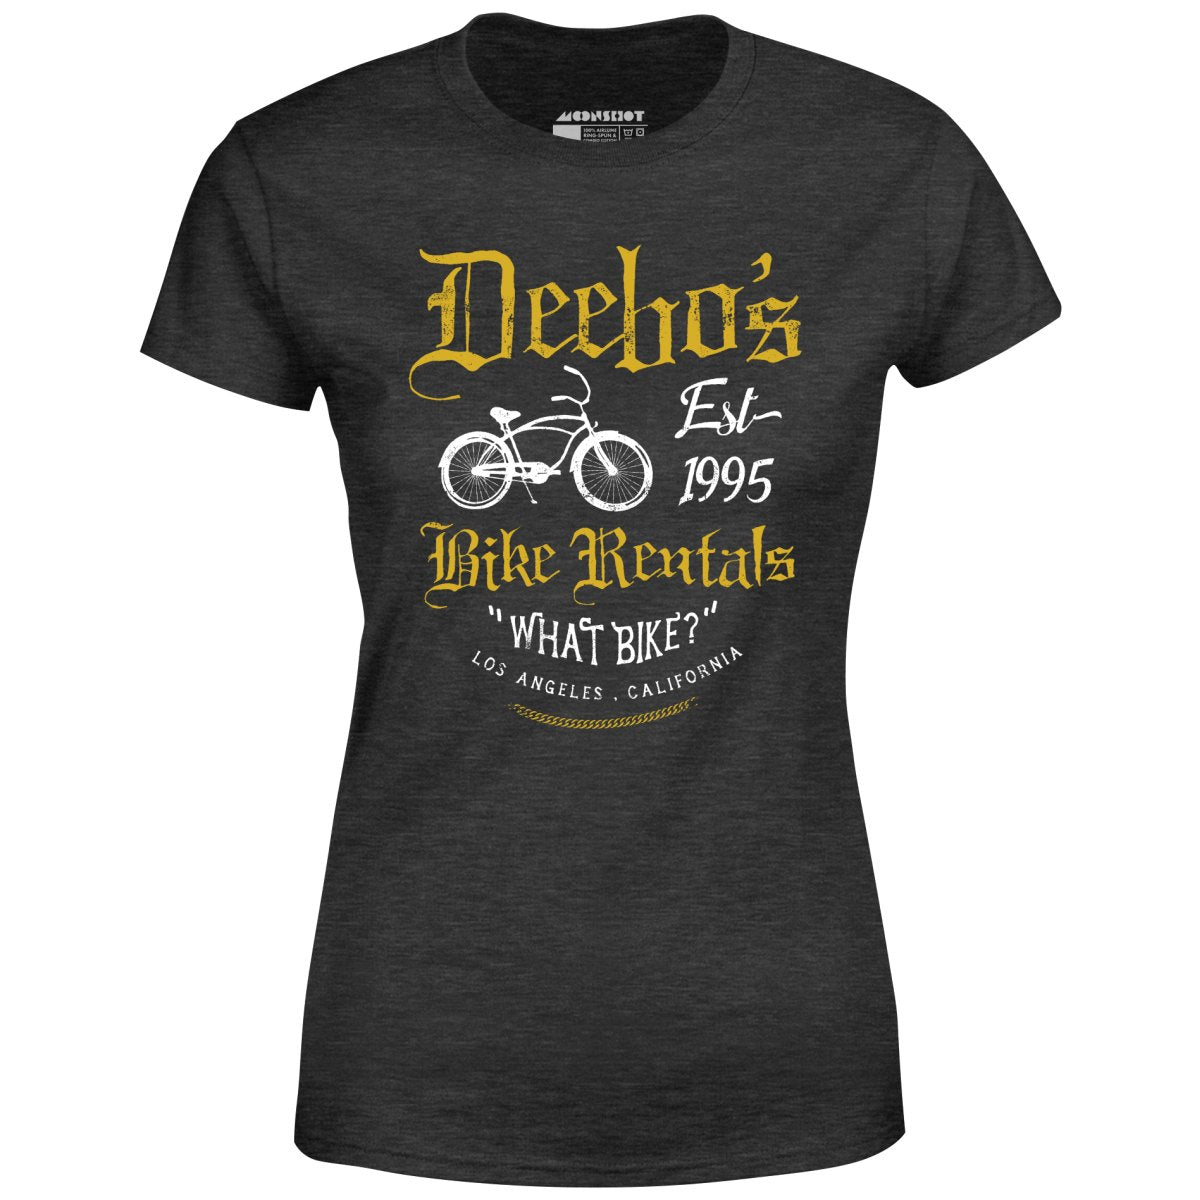 Deebo's Bike Rentals - Women's T-Shirt